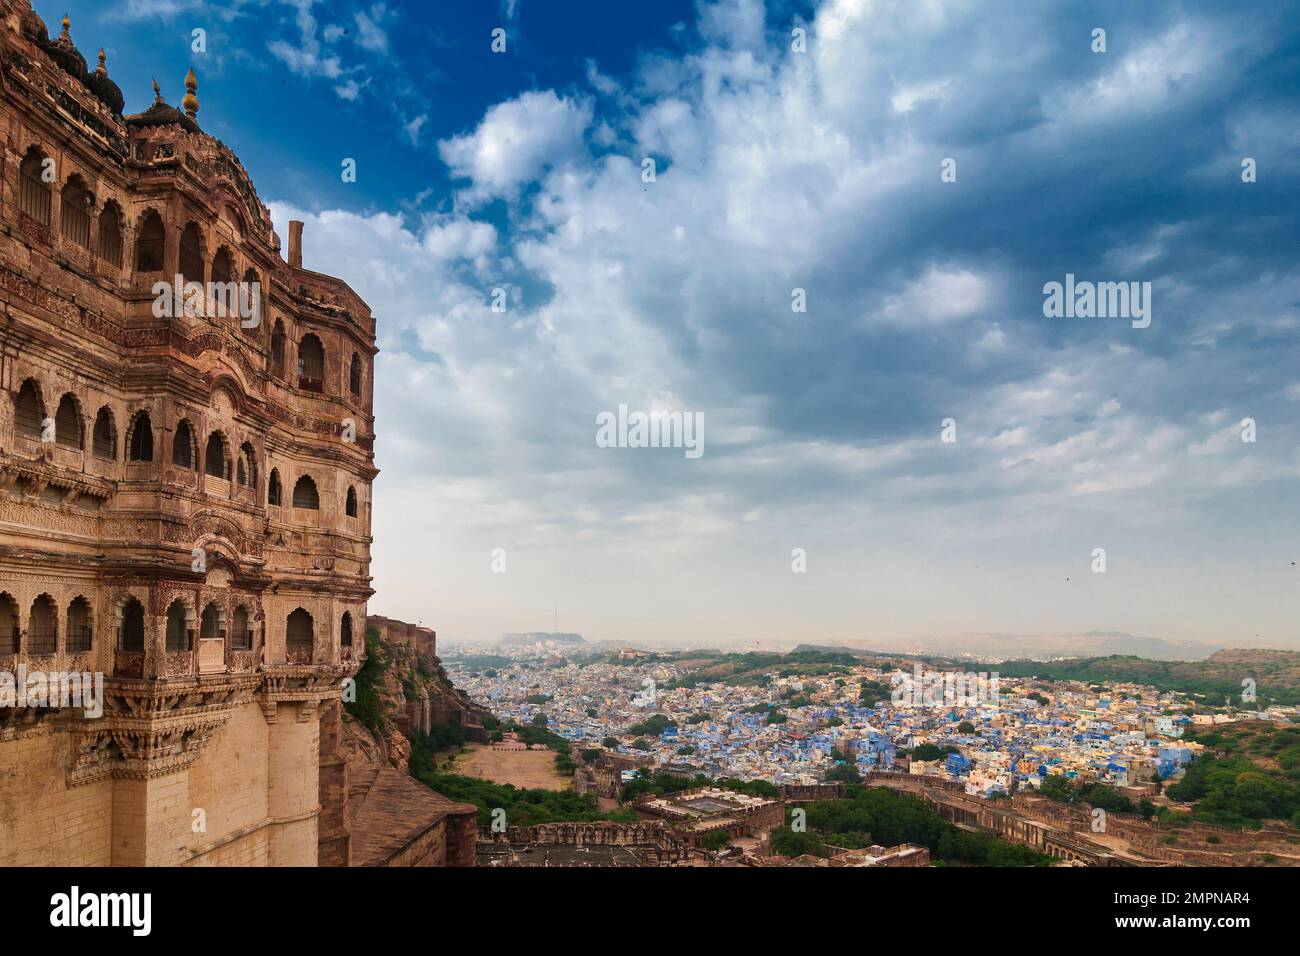 Blick auf die Festung Mehrangarh mit Fernsicht auf die blaue Stadt Jodhpur, Rajasthan, Indien. Das historische Fort ist UNESCO-Weltkulturerbe. Blauer Himmel, Wolken. Stockfoto